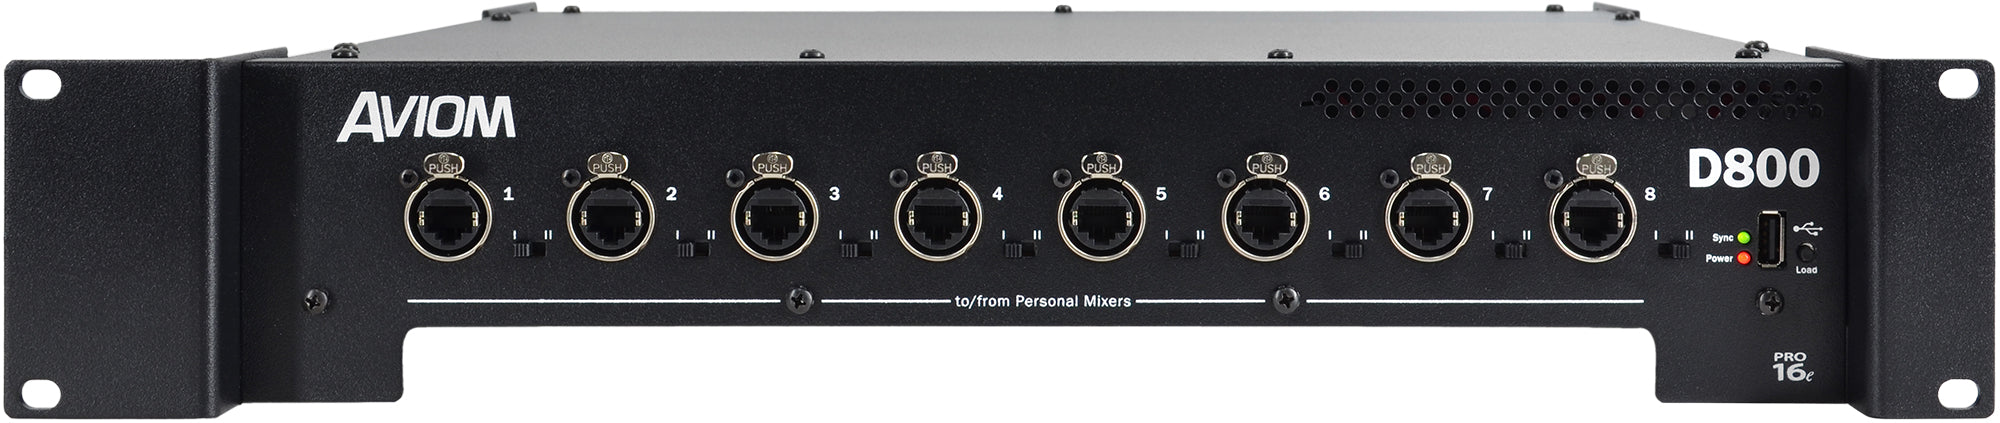 Aviom D800-Dante - Professional Audio Design, Inc